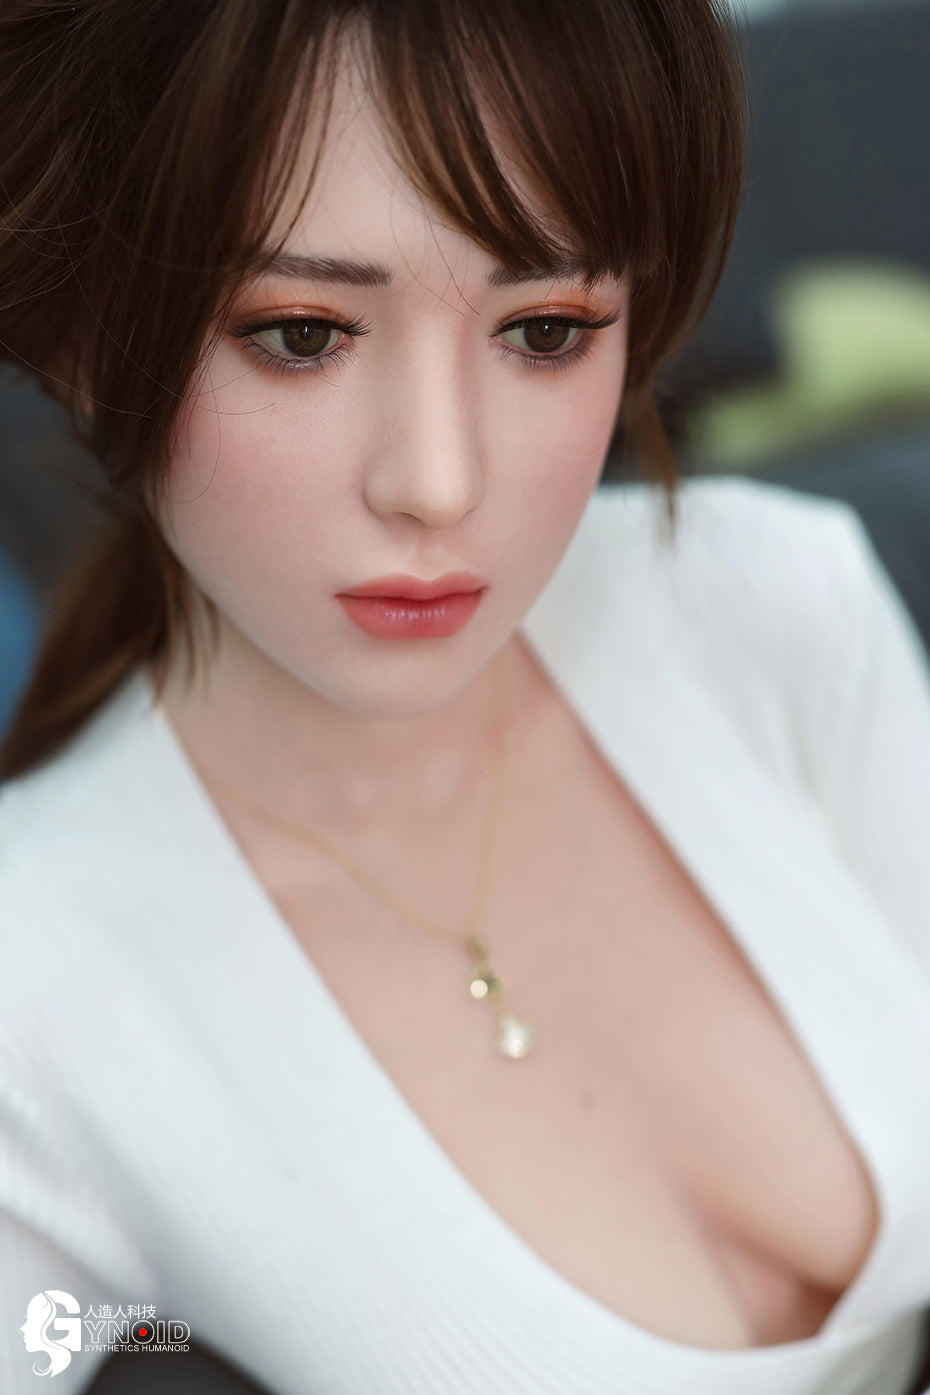 Gynoid Model 13 - Lisa - Love Dolls 4U